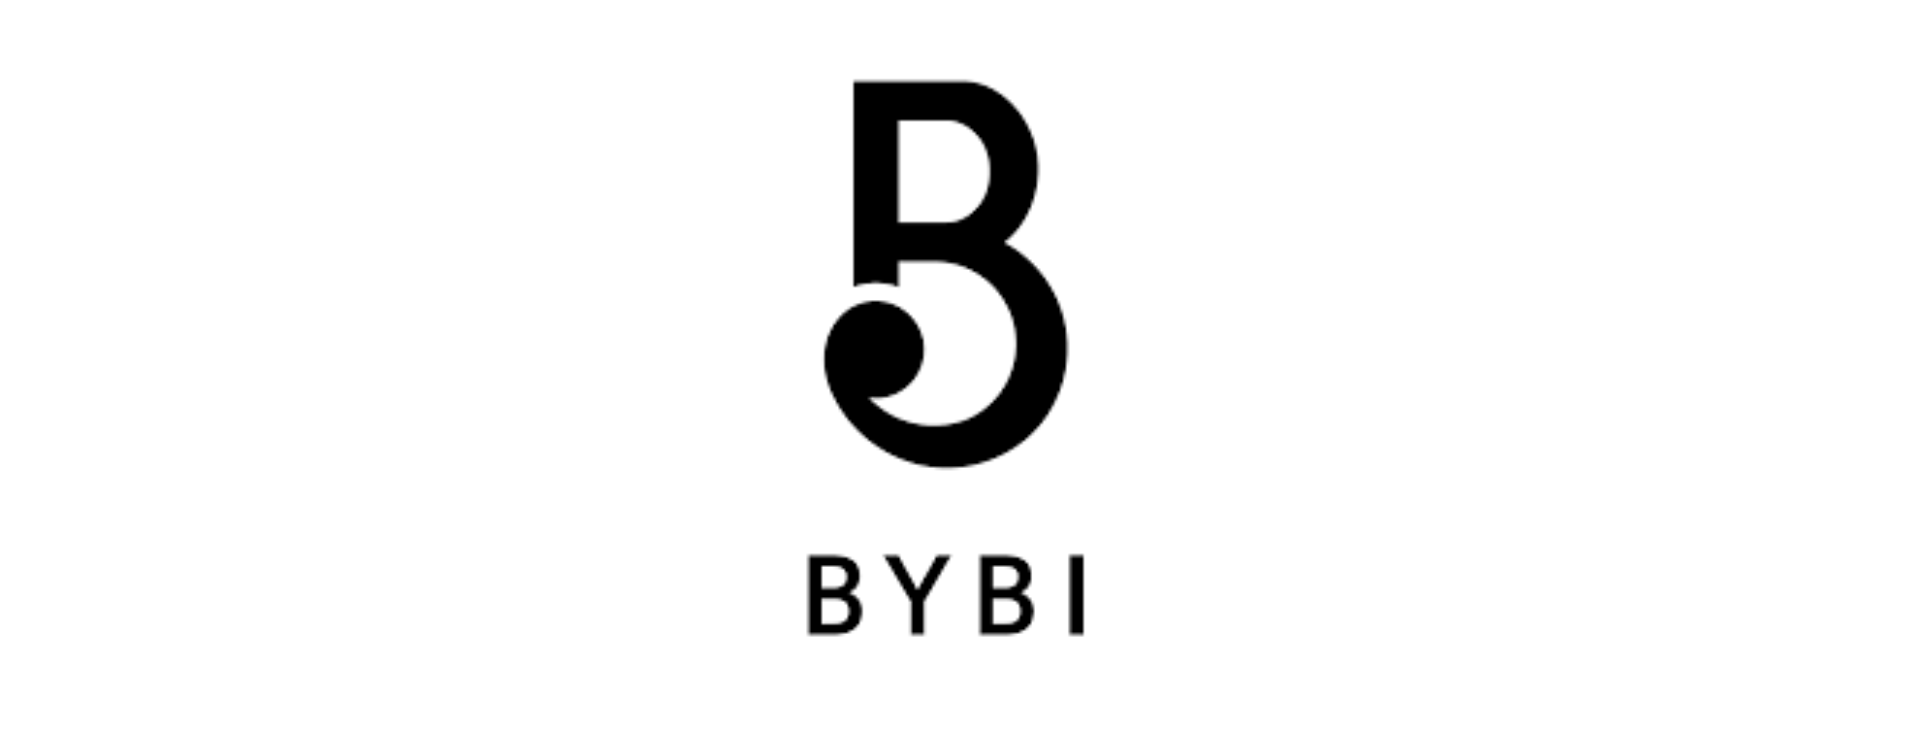 BYBI